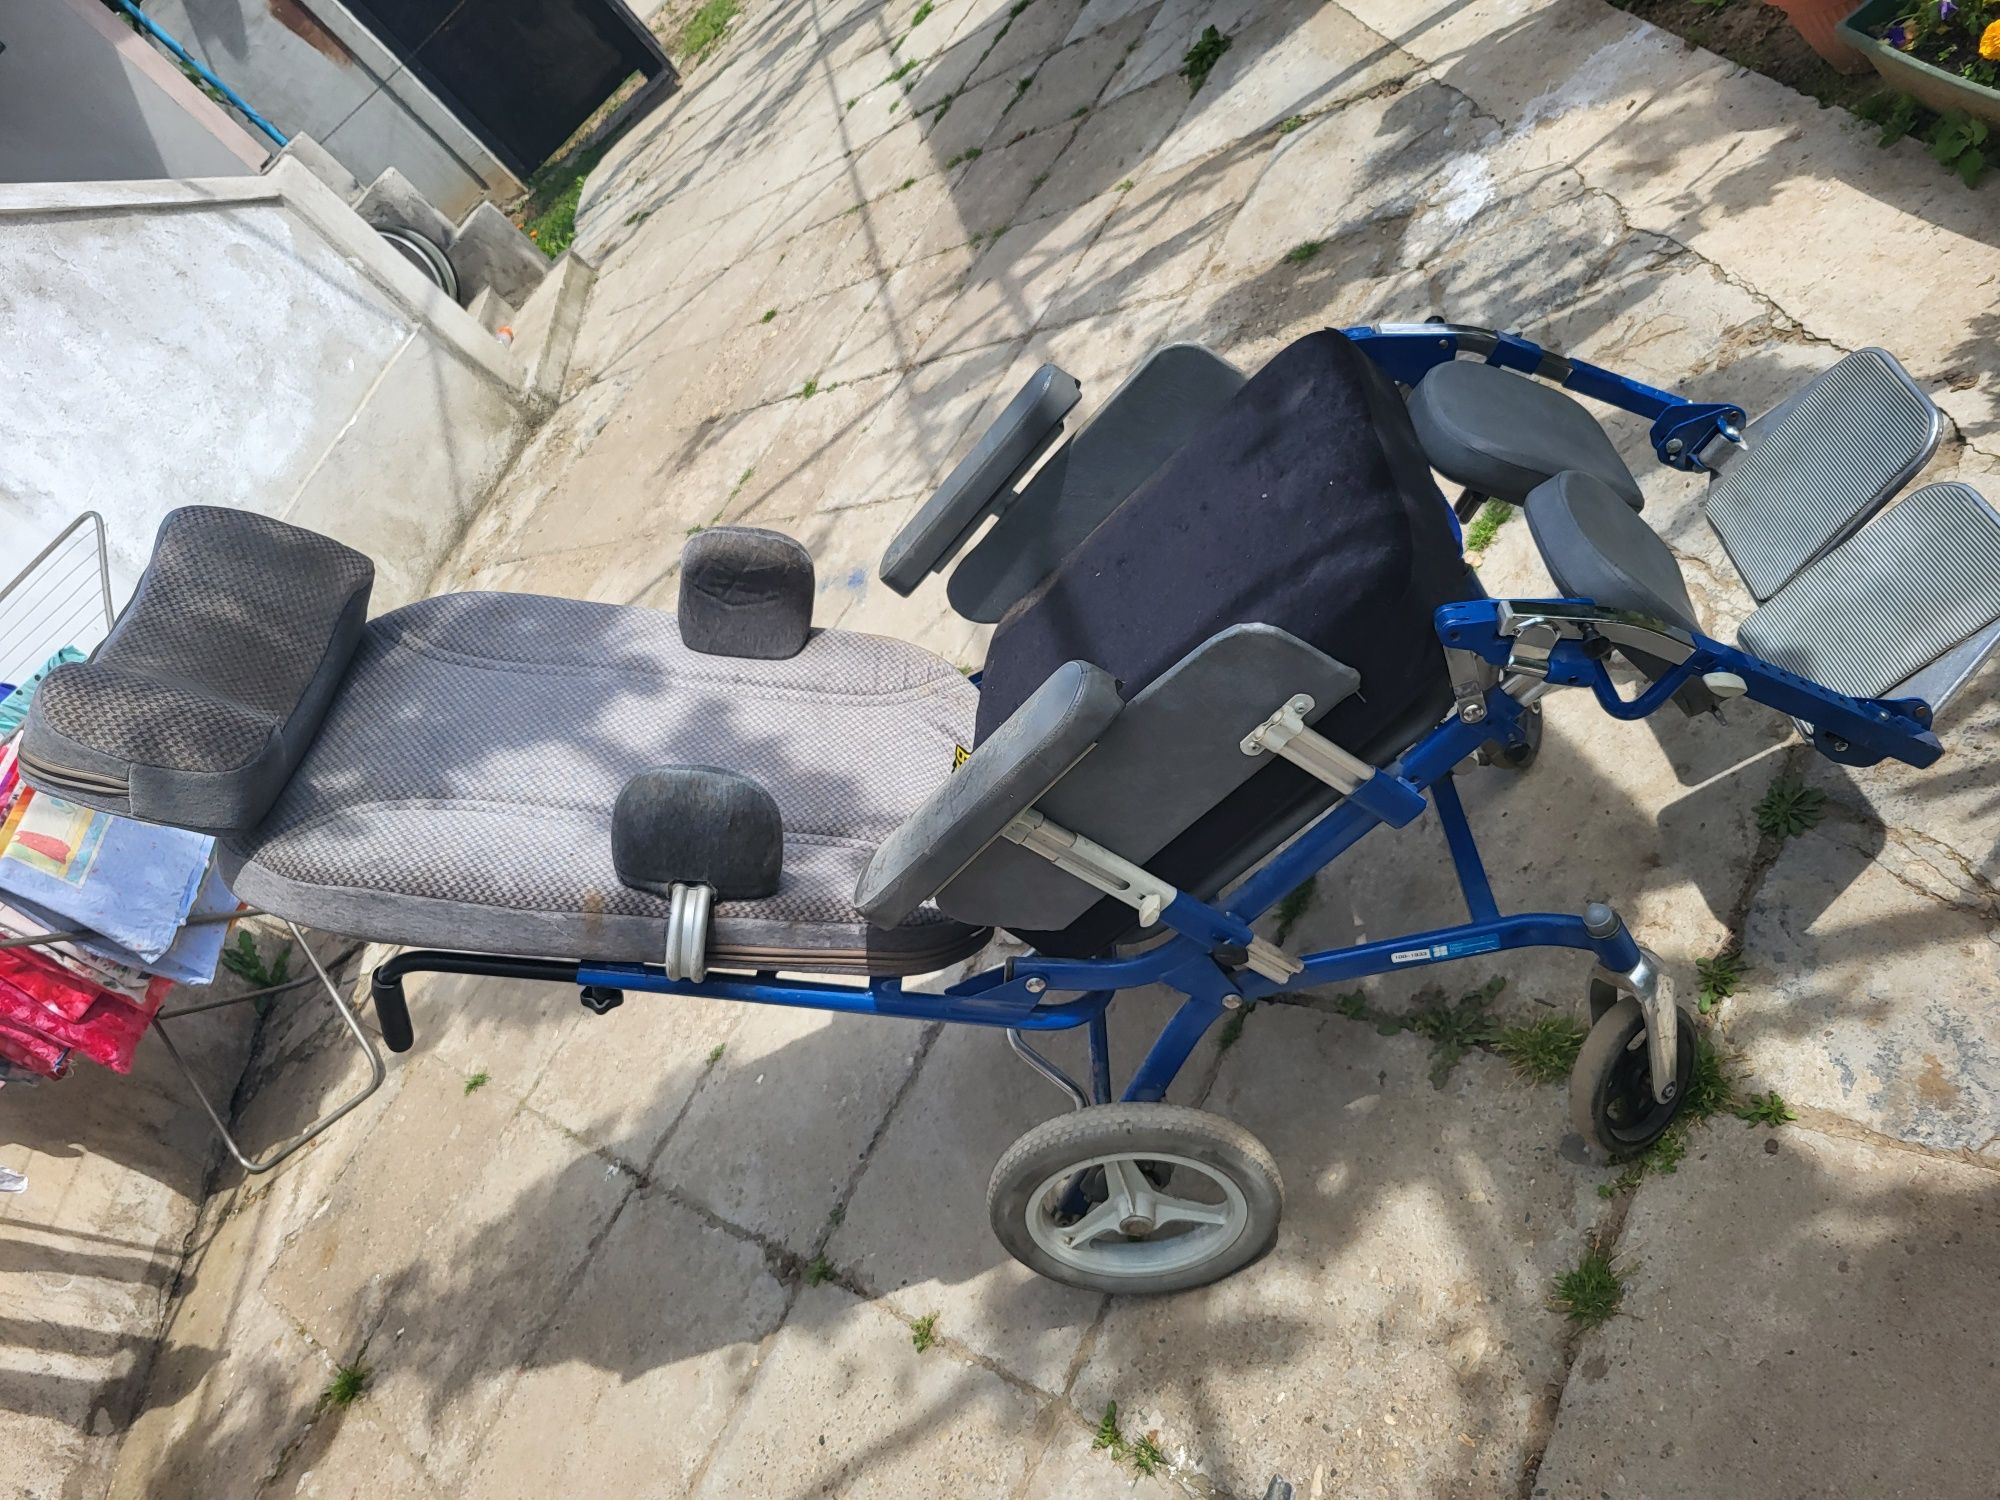 Carut/fotoliu rulant pentru persoane cu dizabilitati